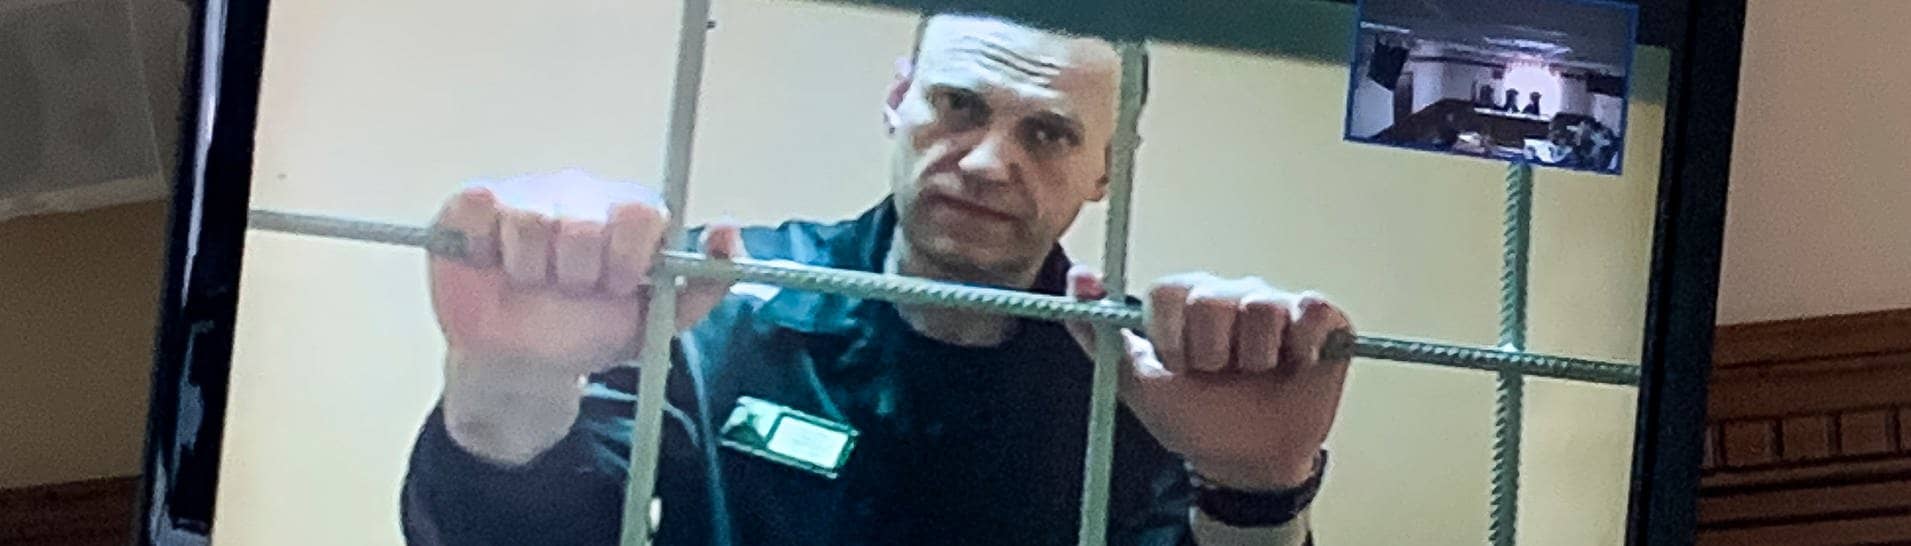 Alexej Nawalny  wird in einem Gerichtssaal in Wladimir per Videoverbindung aus dem Gefängnis zugeschaltet und ist auf einem Bildschirm zu sehen.